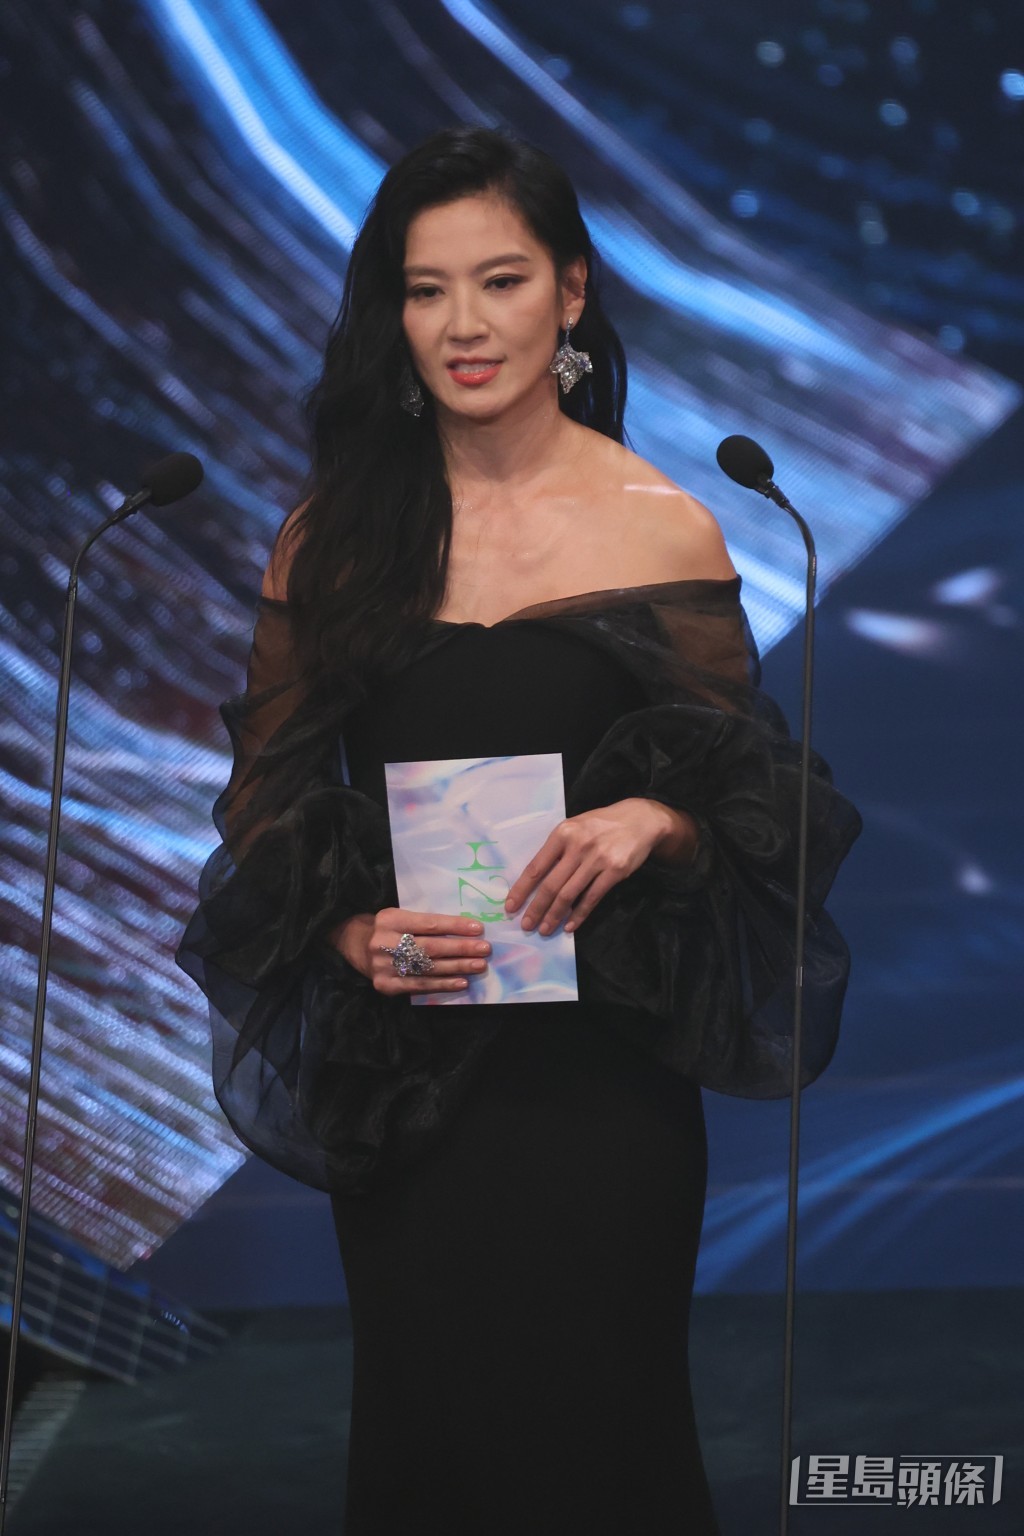 久未露面的台湾女星林熙蕾负责颁发奖项“最佳男配角”。  ​